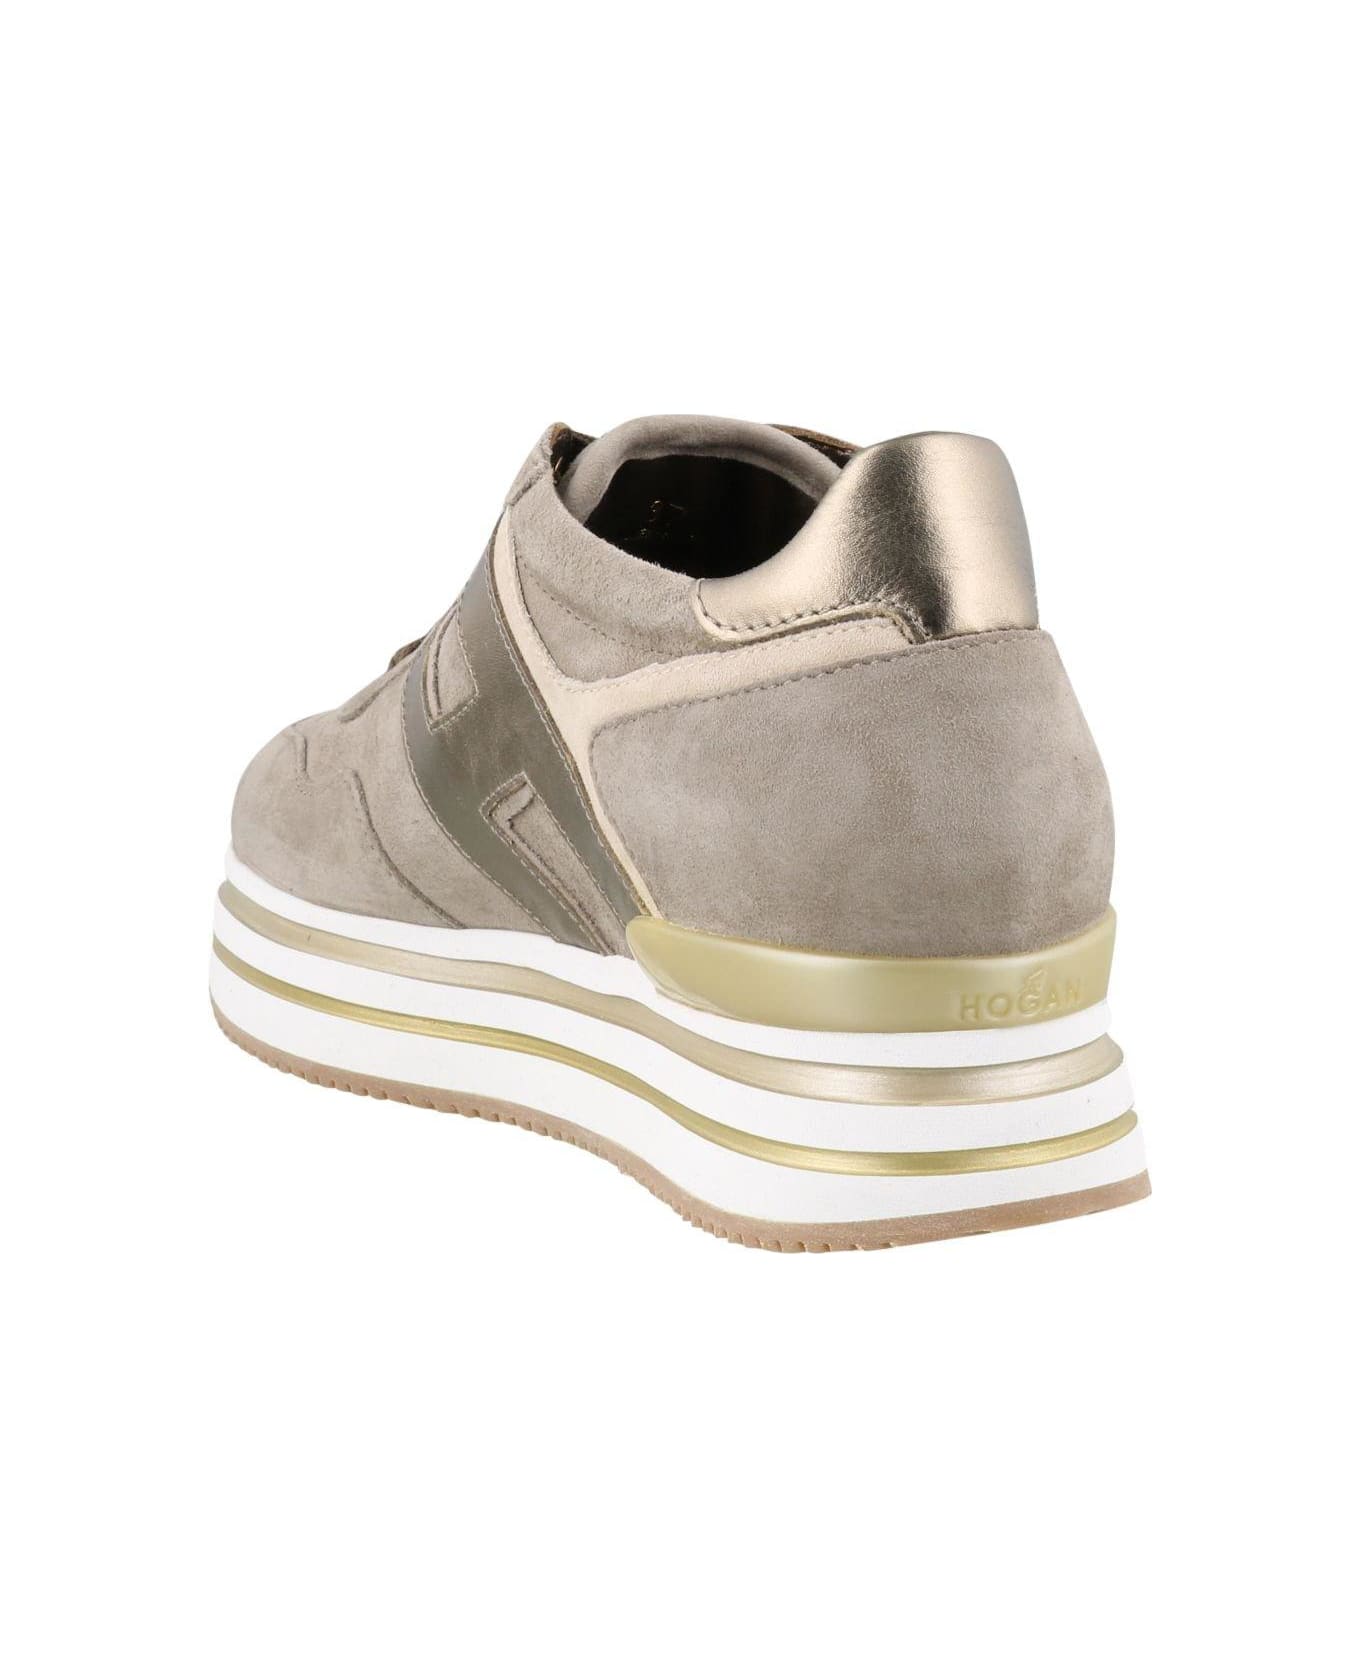 Hogan Midi H222 Platform Sneakers - Brown